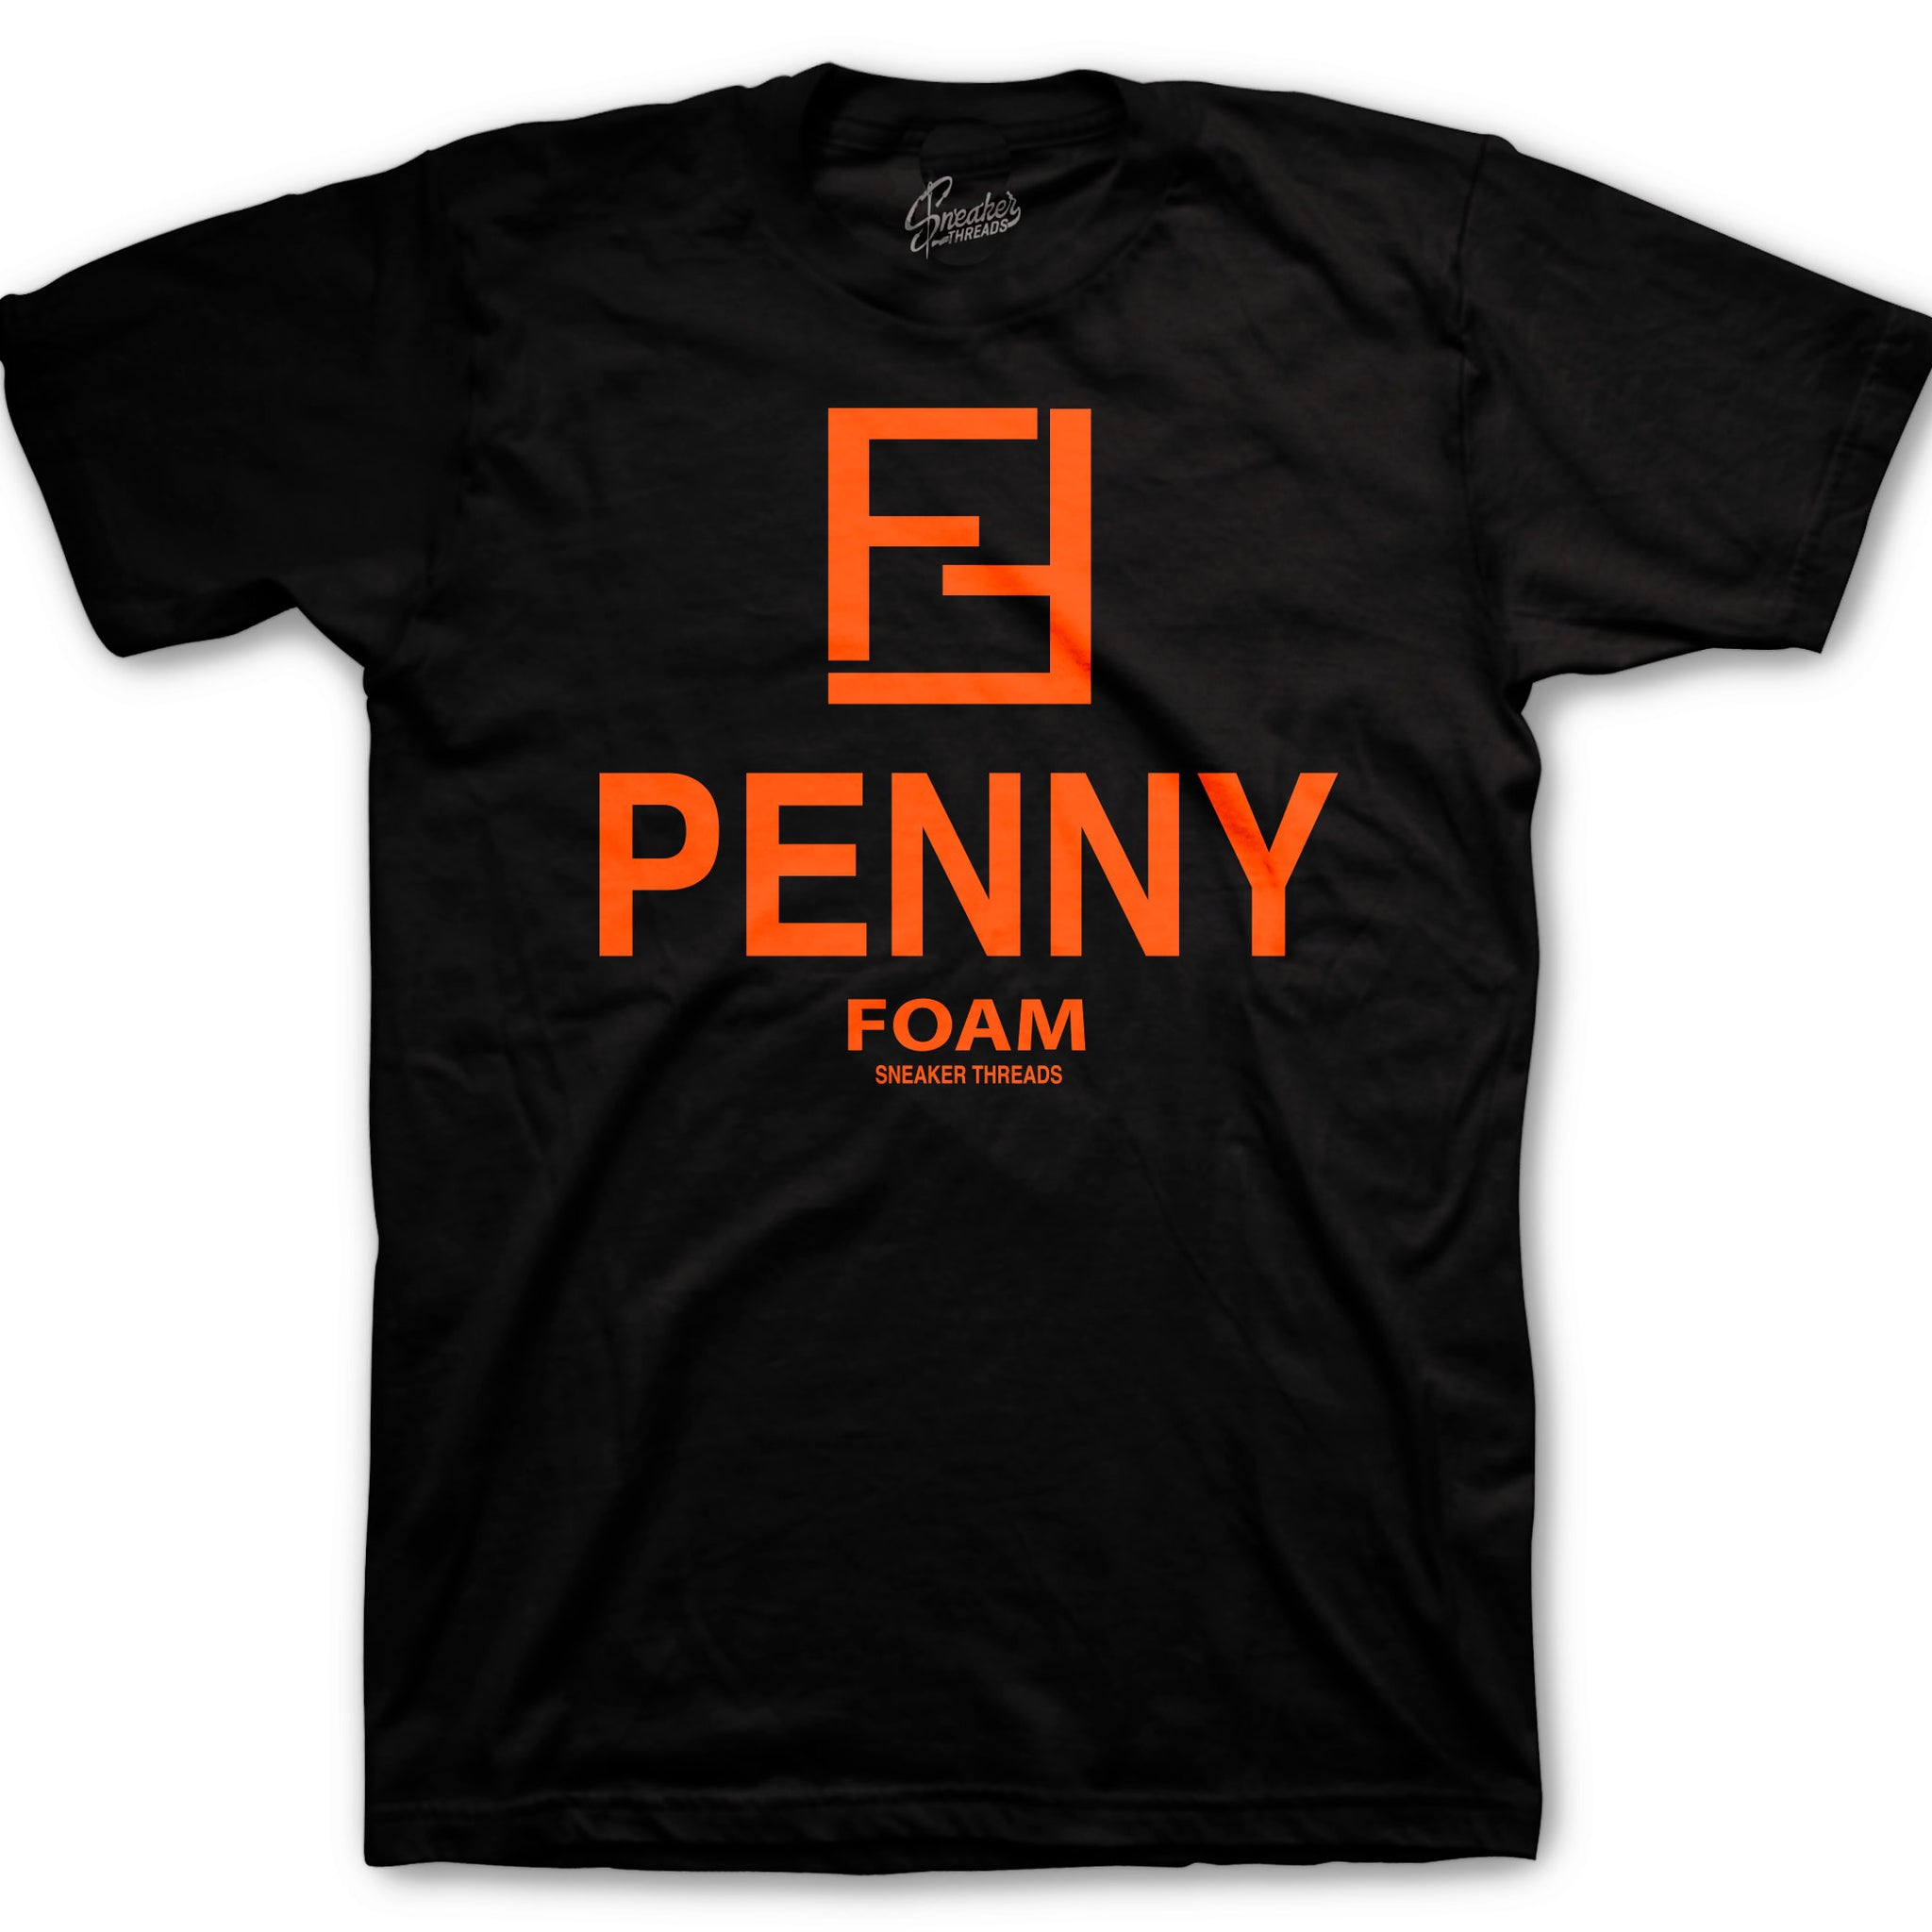 Orange Penny Foam shirts for Shattered Backboards